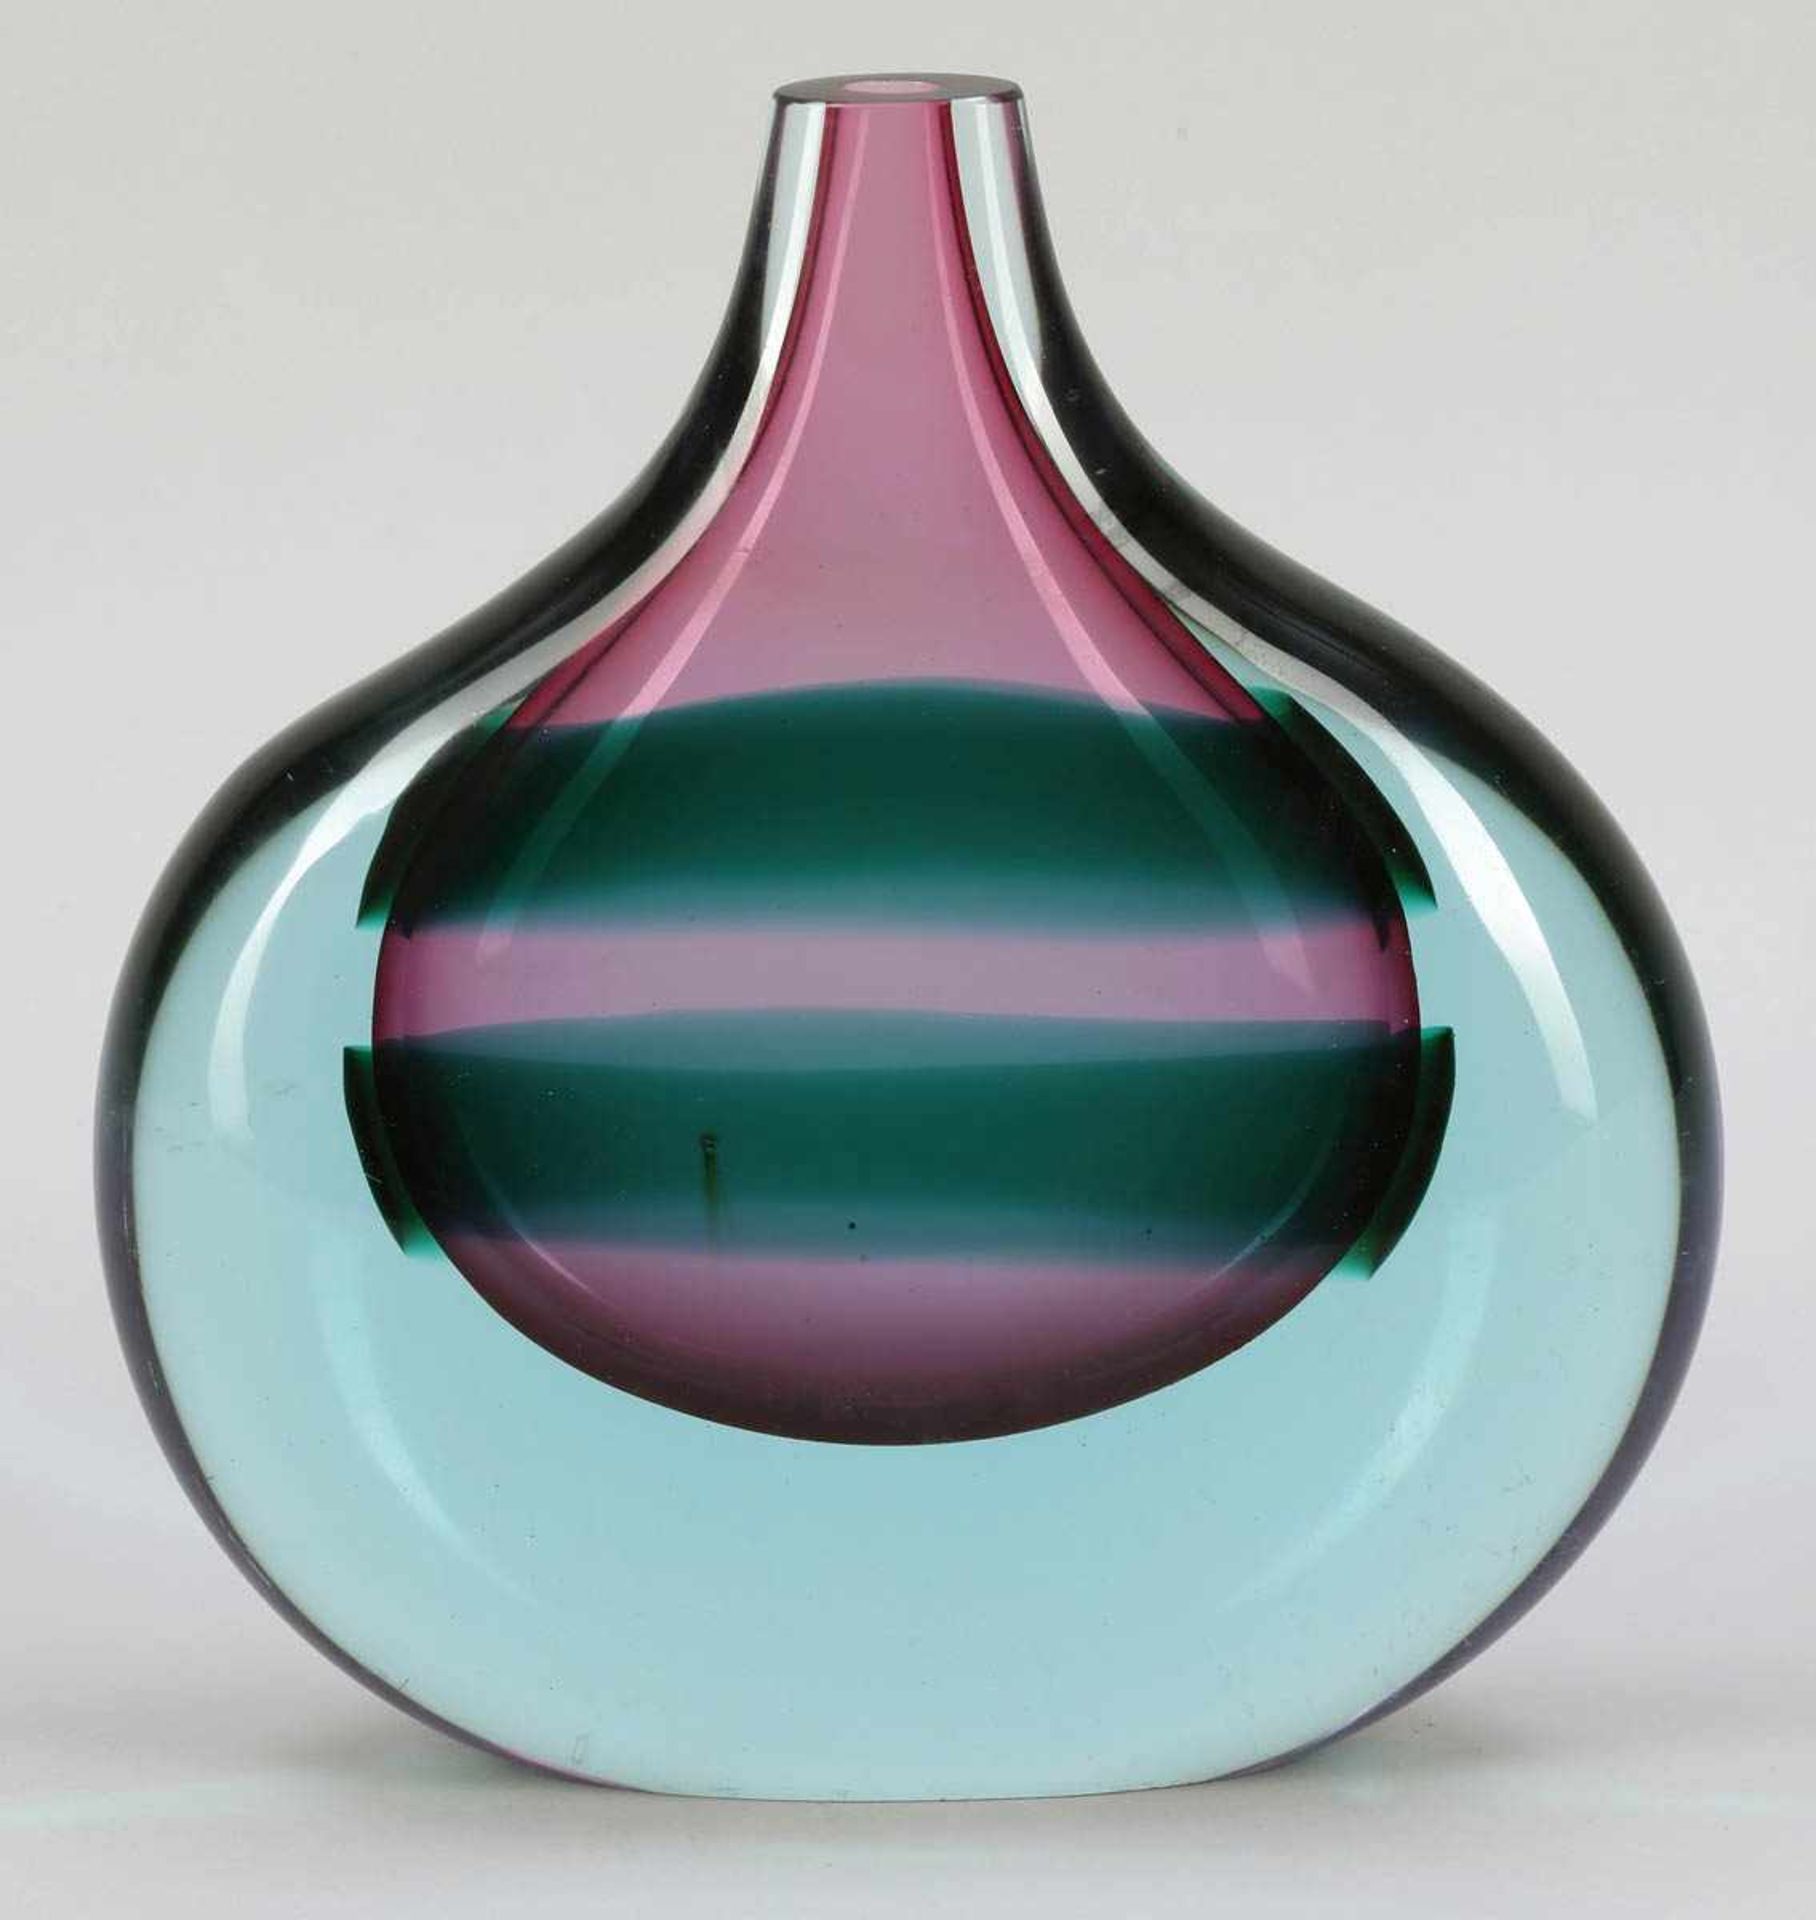 Flache Vase Sommerso Luciano Gaspari für Salviati & C., Murano um 1970. Violettes Glas mit zwei